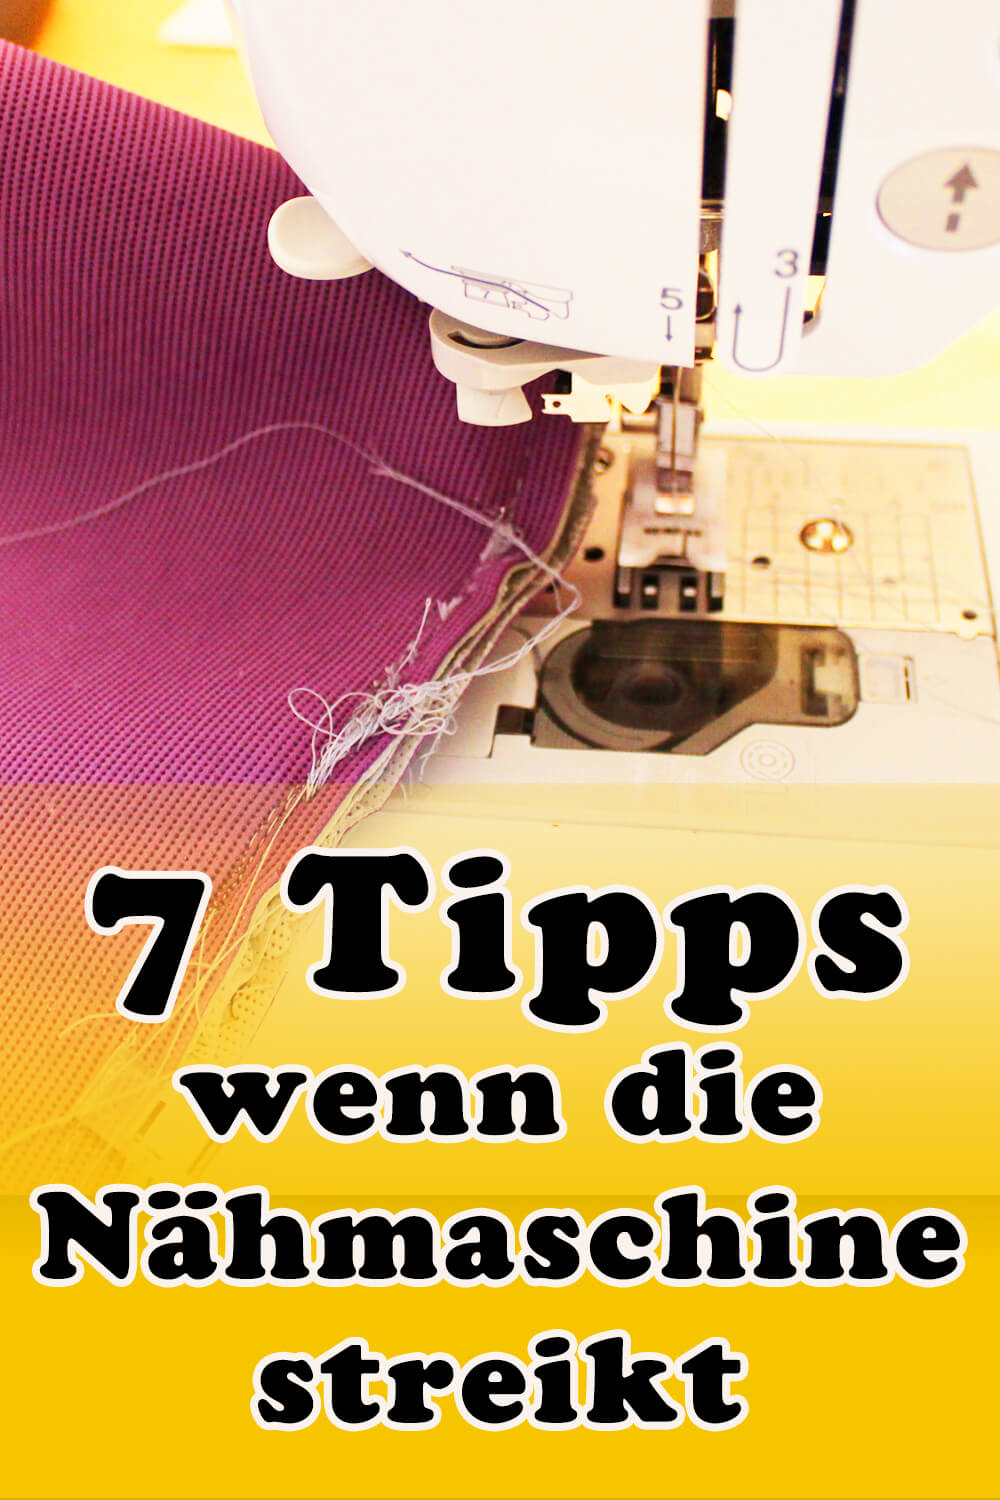 7 Tipps wenn die Nähmaschine streikt Pin